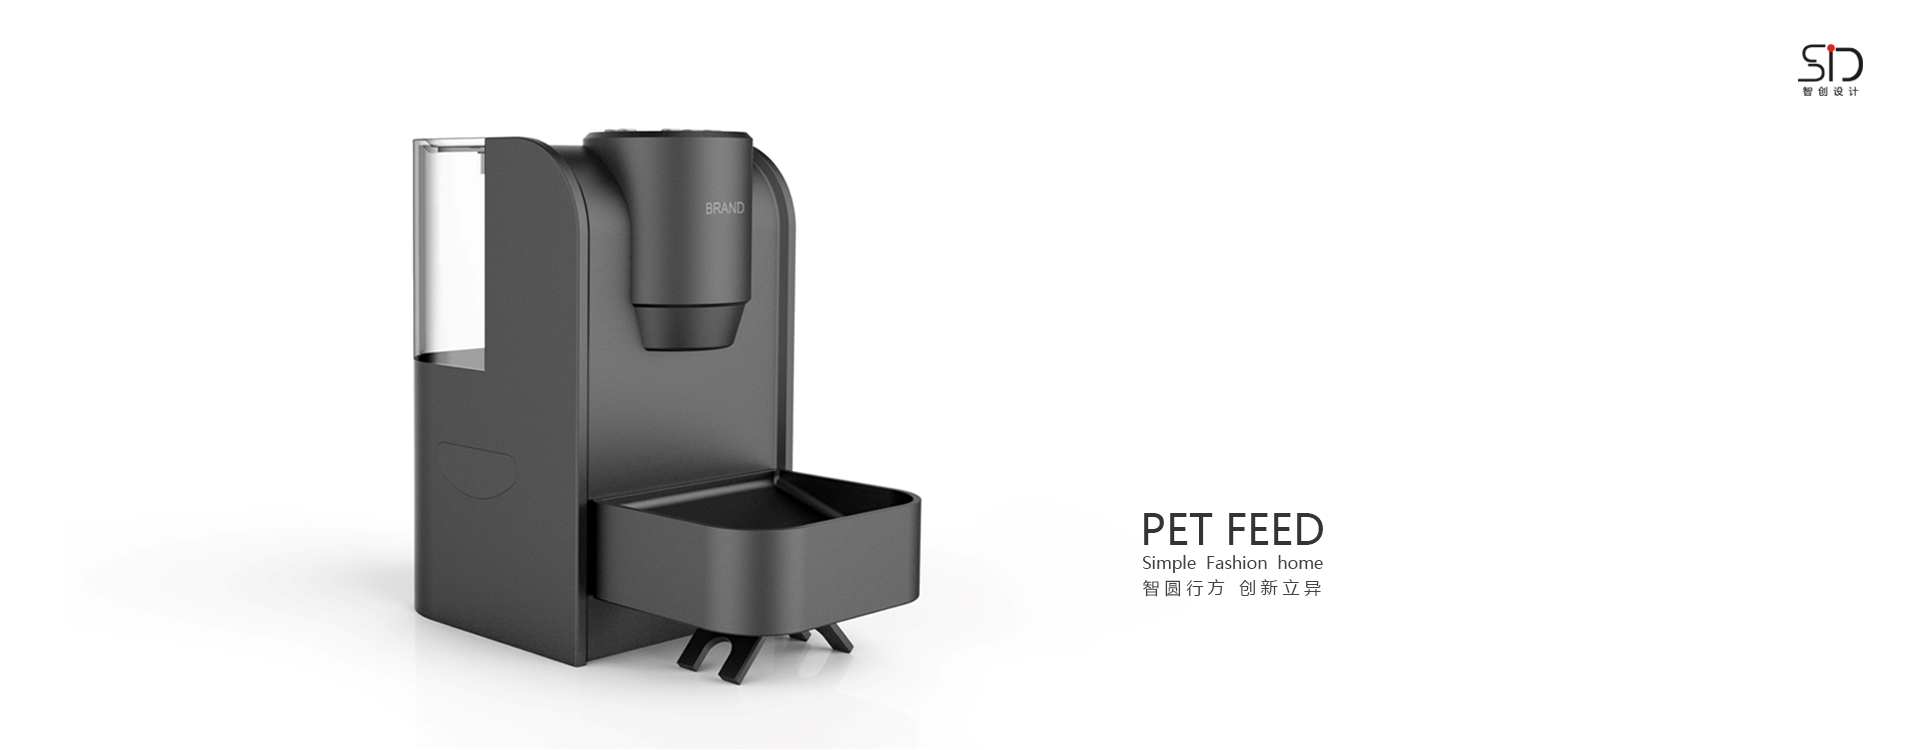 宠物喂食器工业设计/宠物用品设计公司